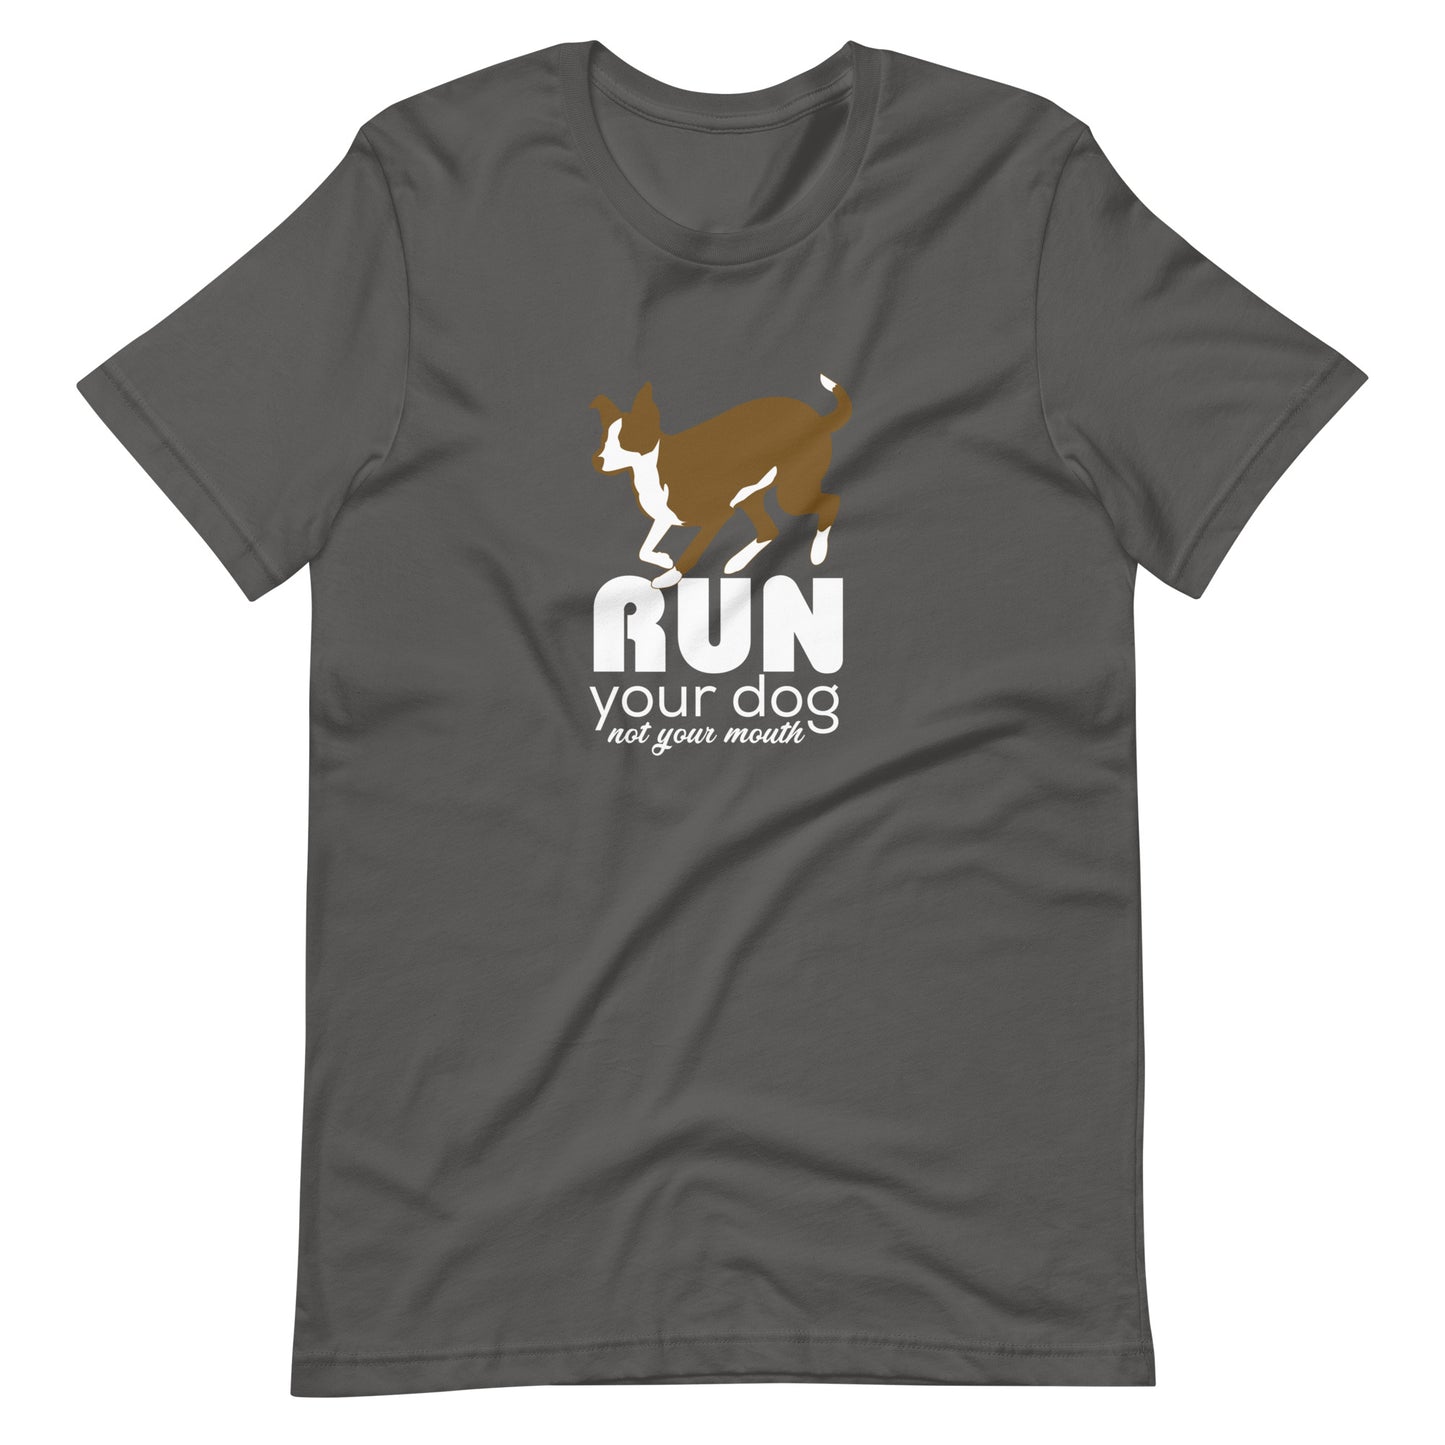 RUN YOUR DOG, MCNAB Unisex t-shirt